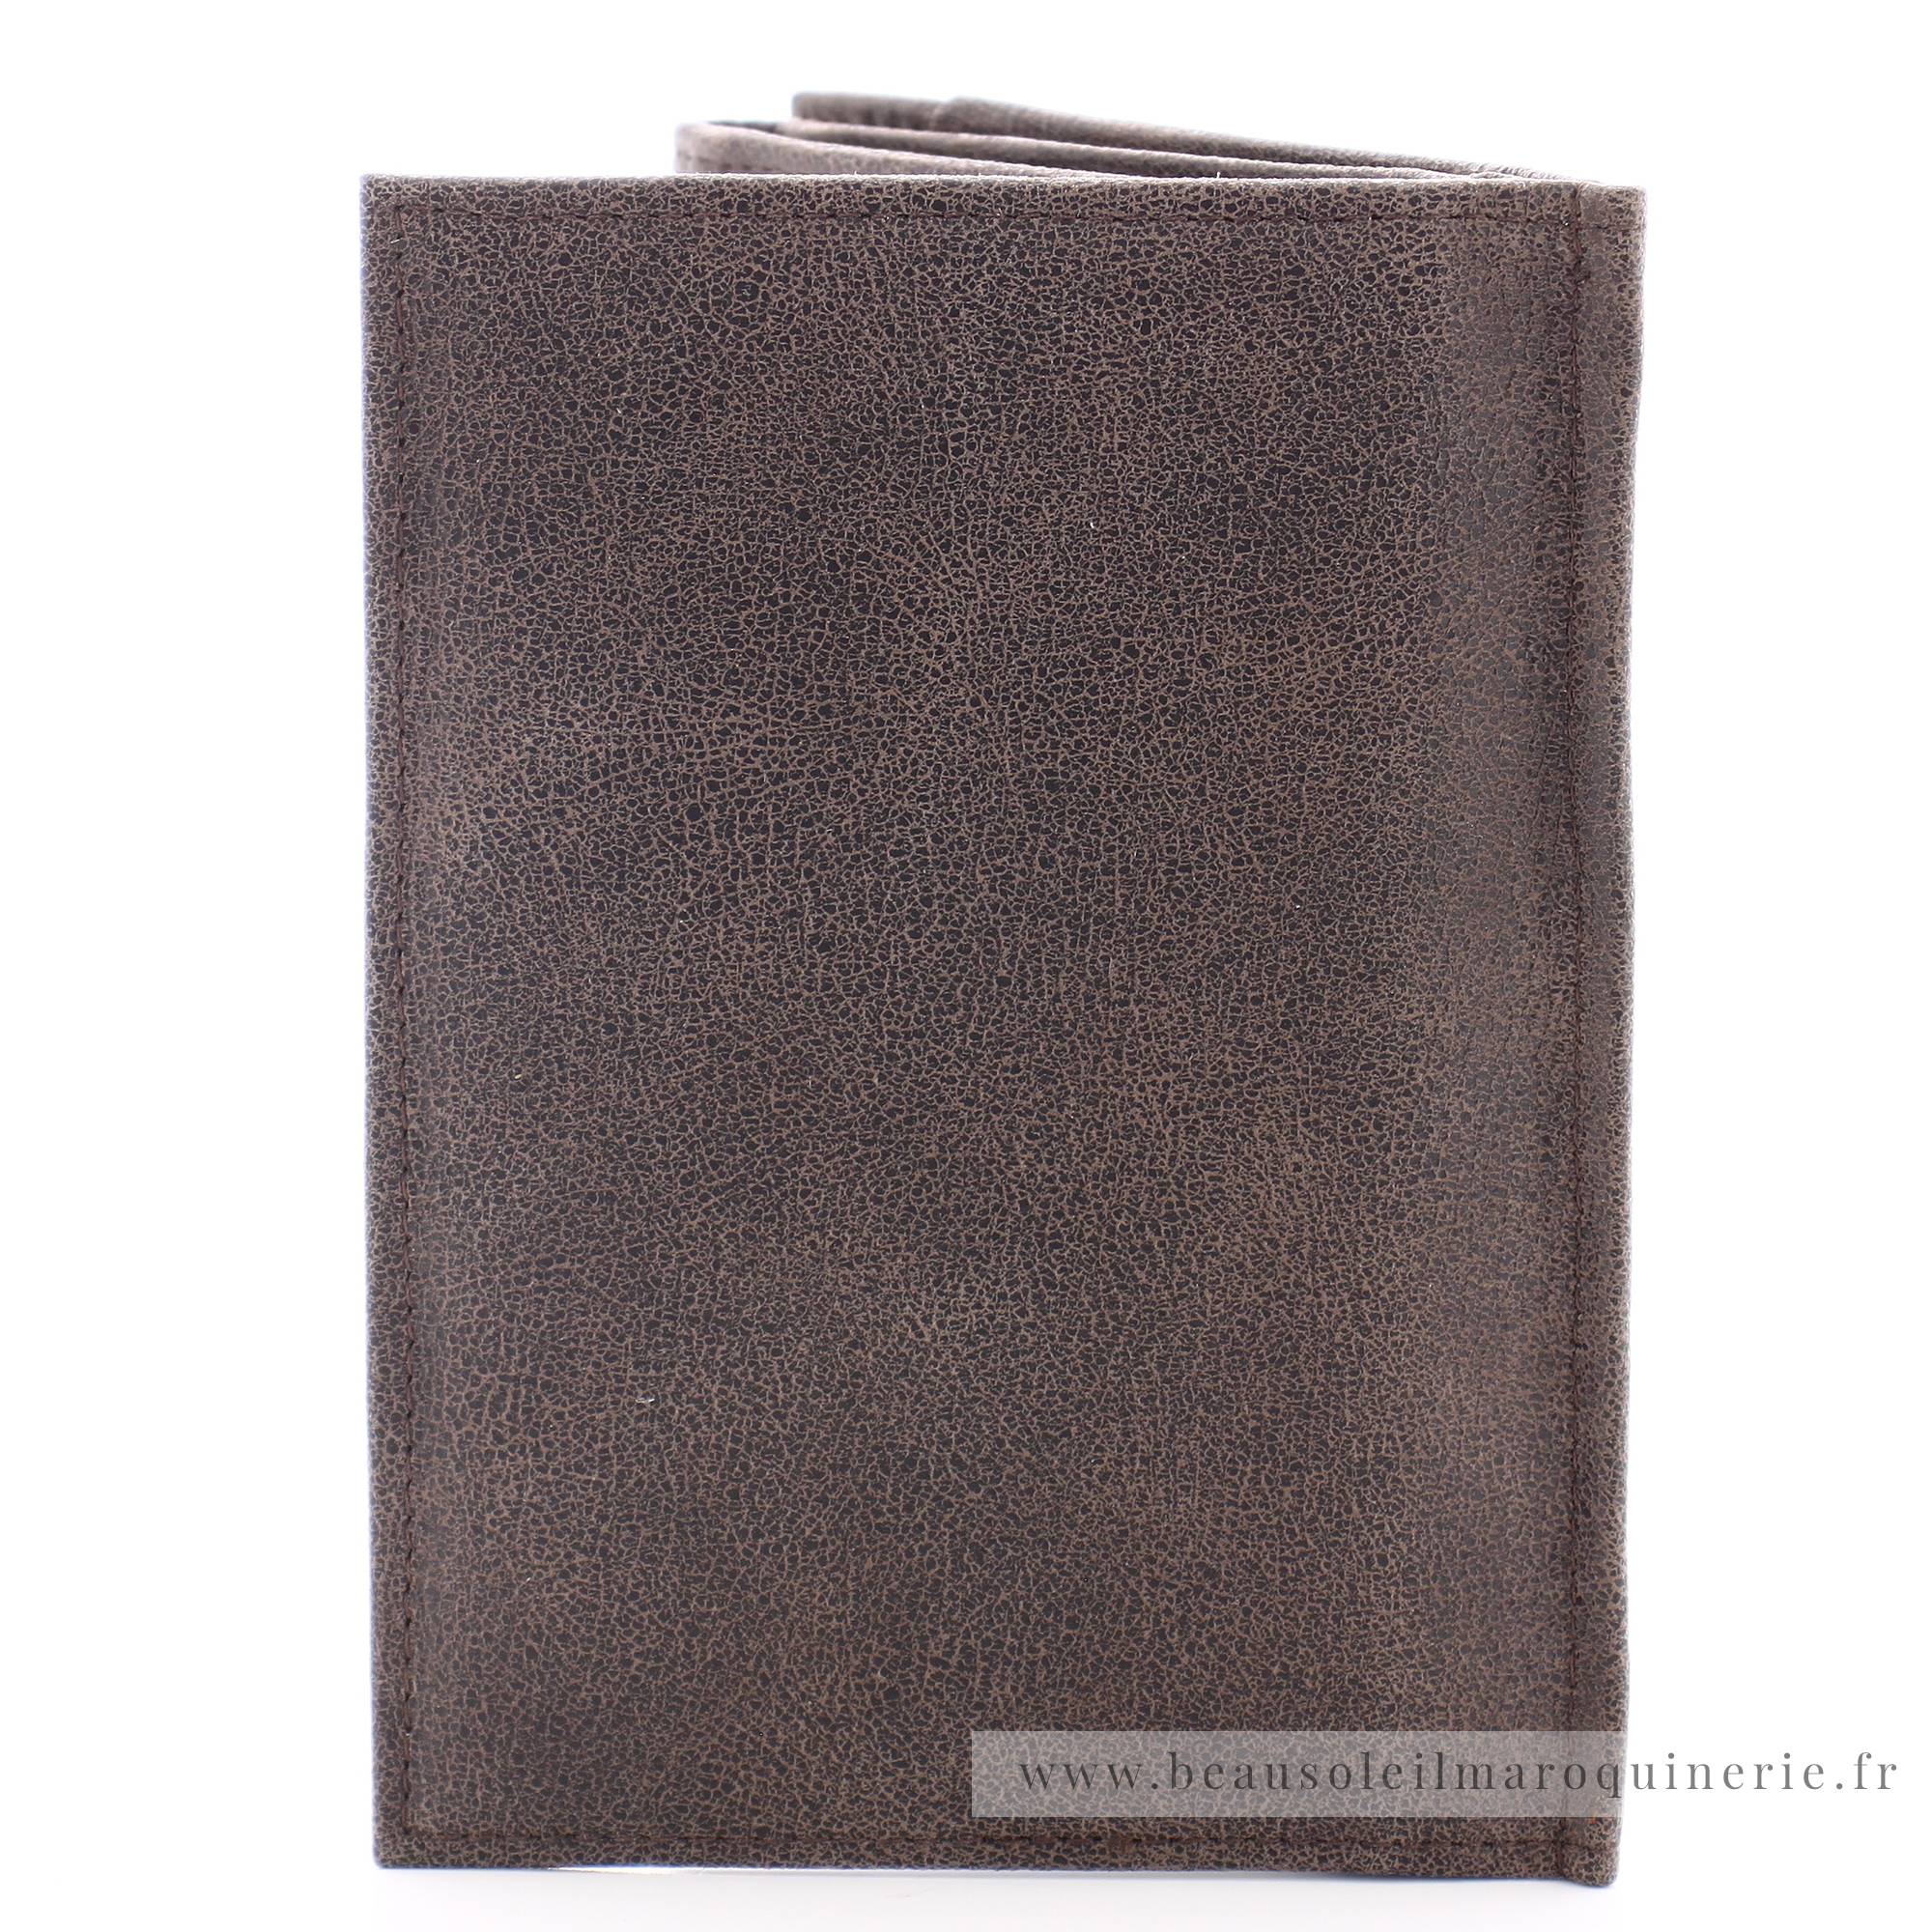 Porte-papiers Arthur & Aston Diego en cuir 1438-982C couleur châtaigne vue de dos